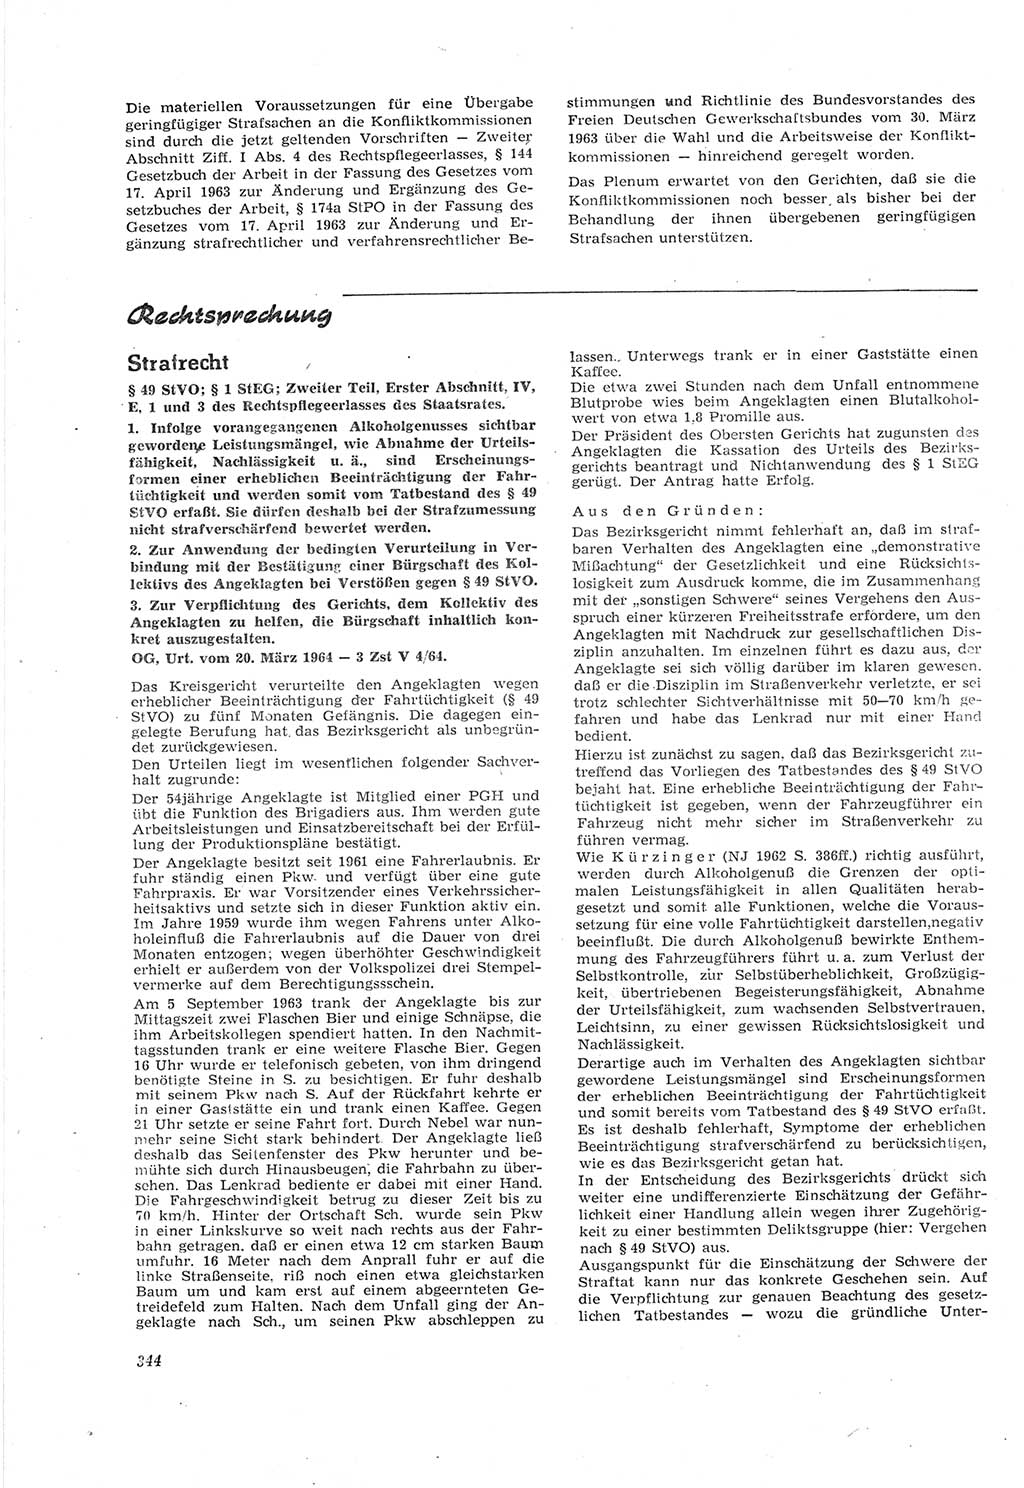 Neue Justiz (NJ), Zeitschrift für Recht und Rechtswissenschaft [Deutsche Demokratische Republik (DDR)], 18. Jahrgang 1964, Seite 344 (NJ DDR 1964, S. 344)